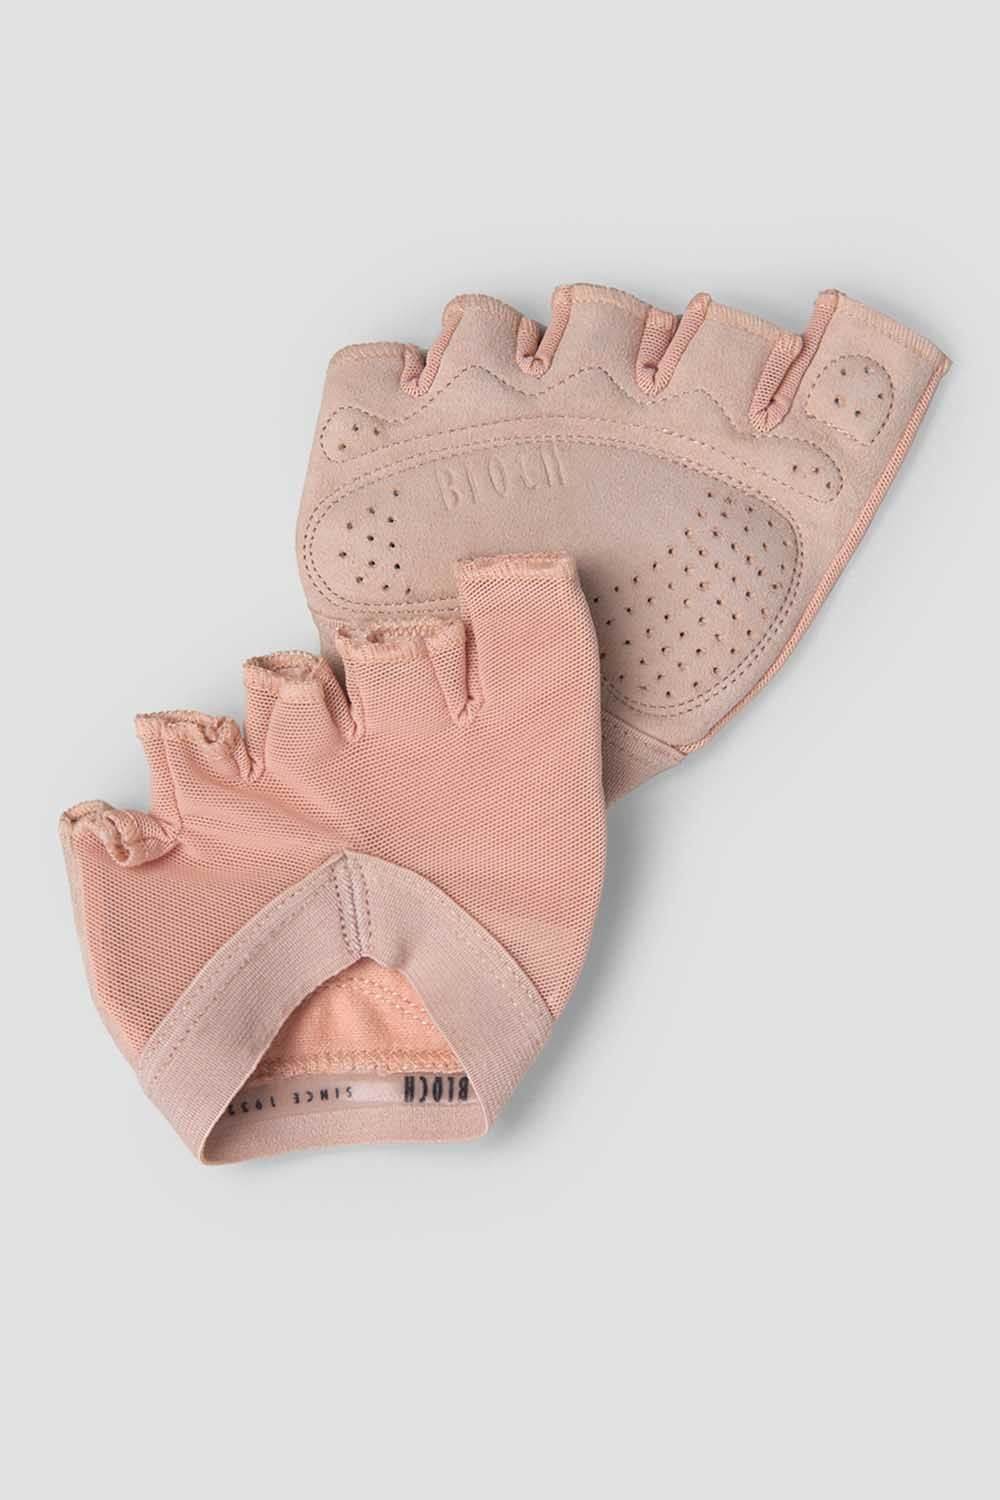 Pédilles Bloch Foot Glove, pour tous vos cours de danse